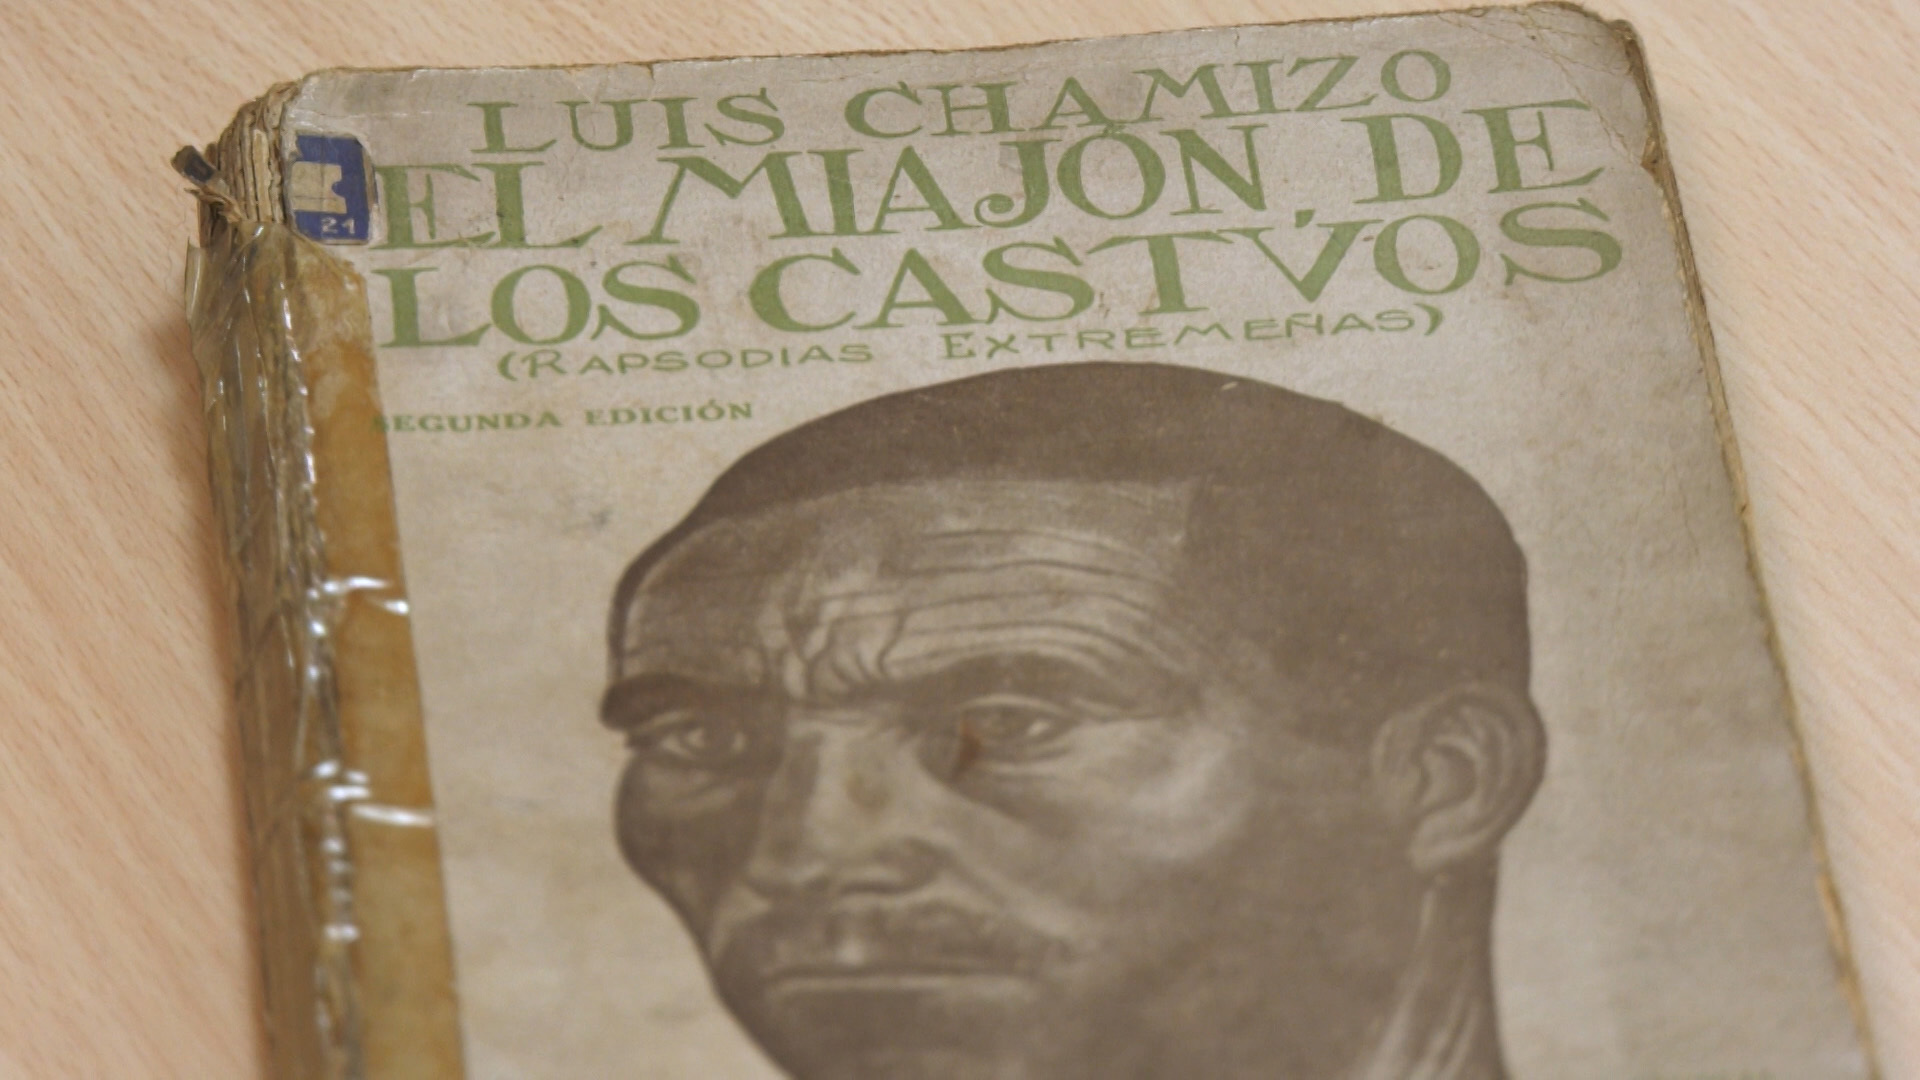 Se cumplen 100 años de ‘El miajón de los castúos’, la obra que catapultó a Luis Chamizo